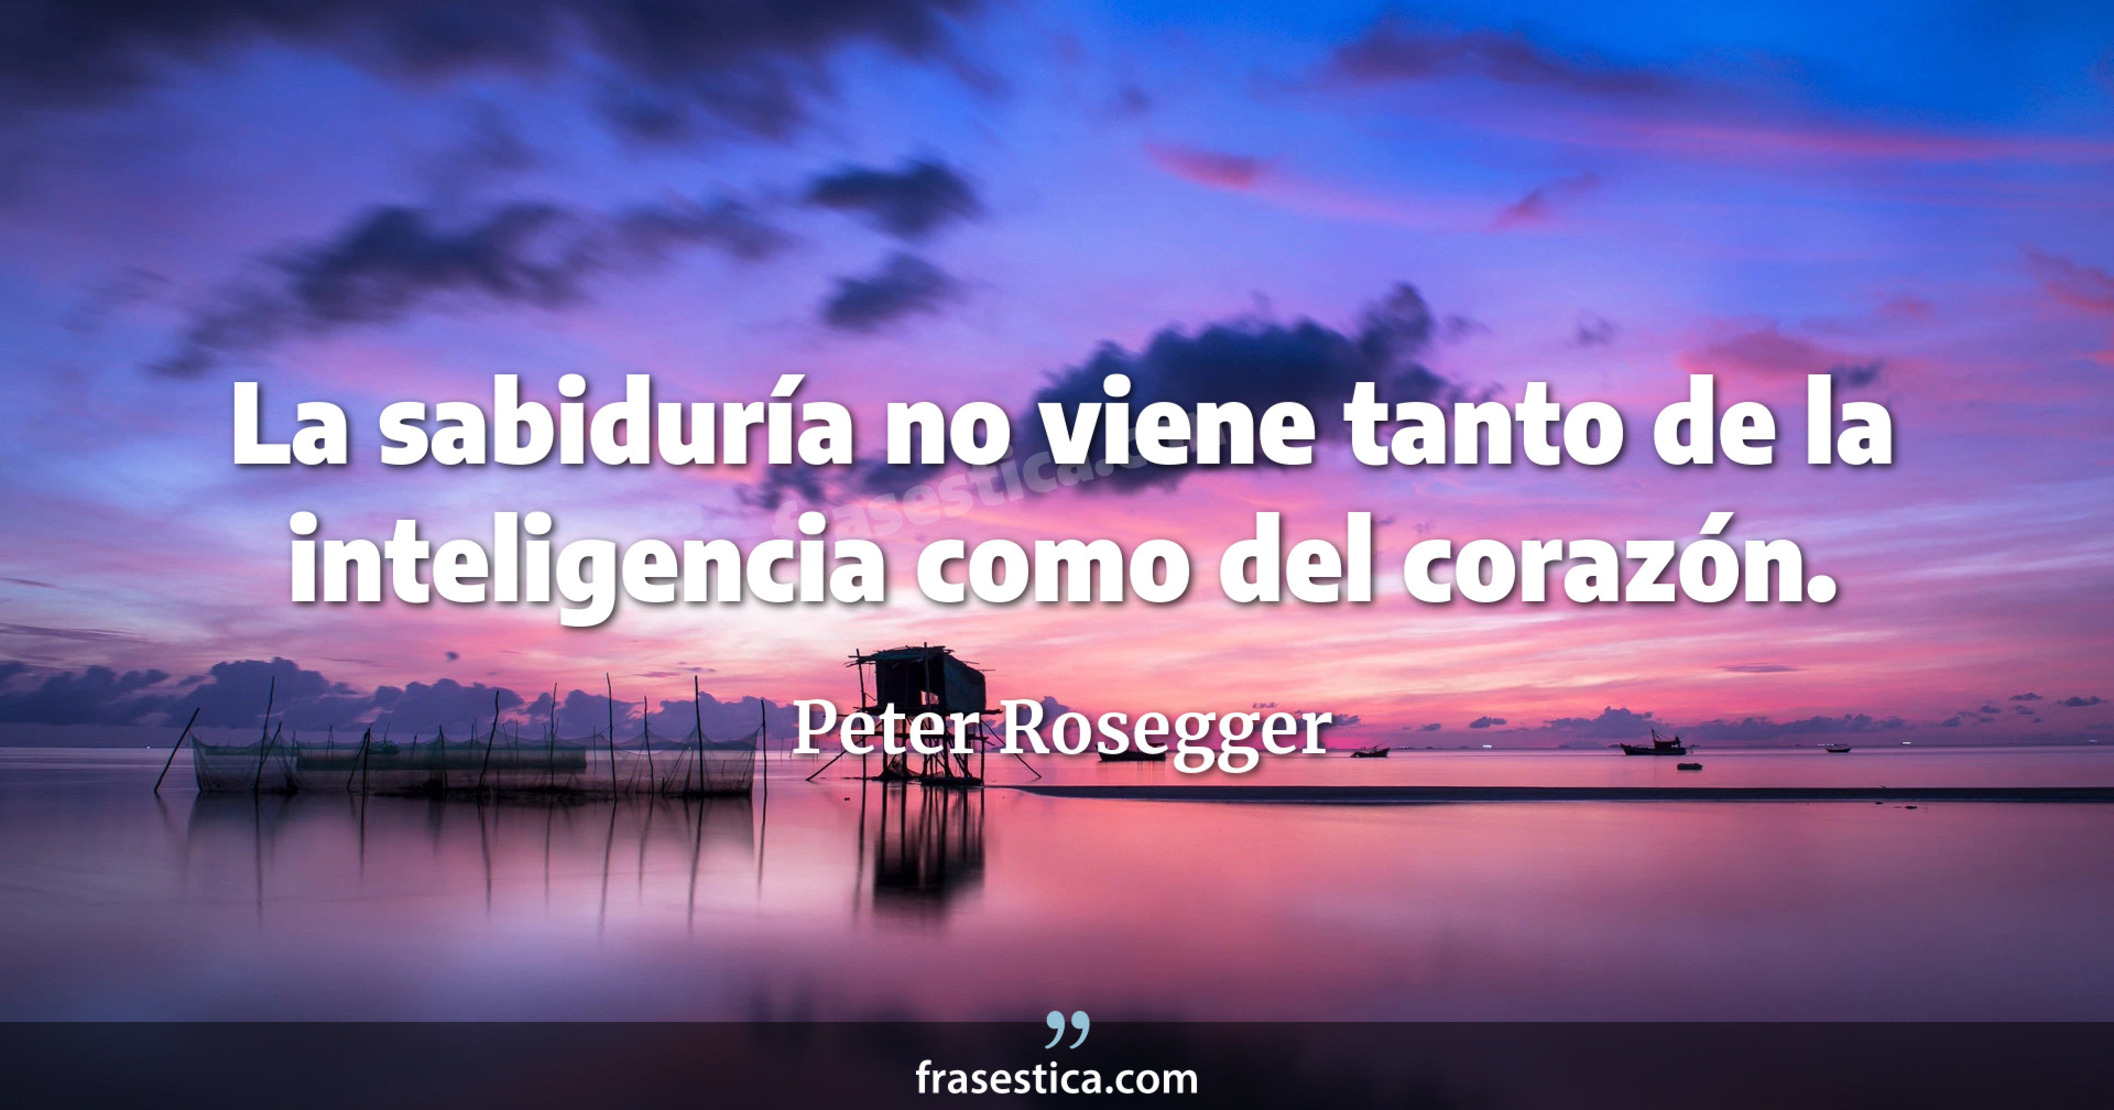 La sabiduría no viene tanto de la inteligencia como del corazón. - Peter Rosegger